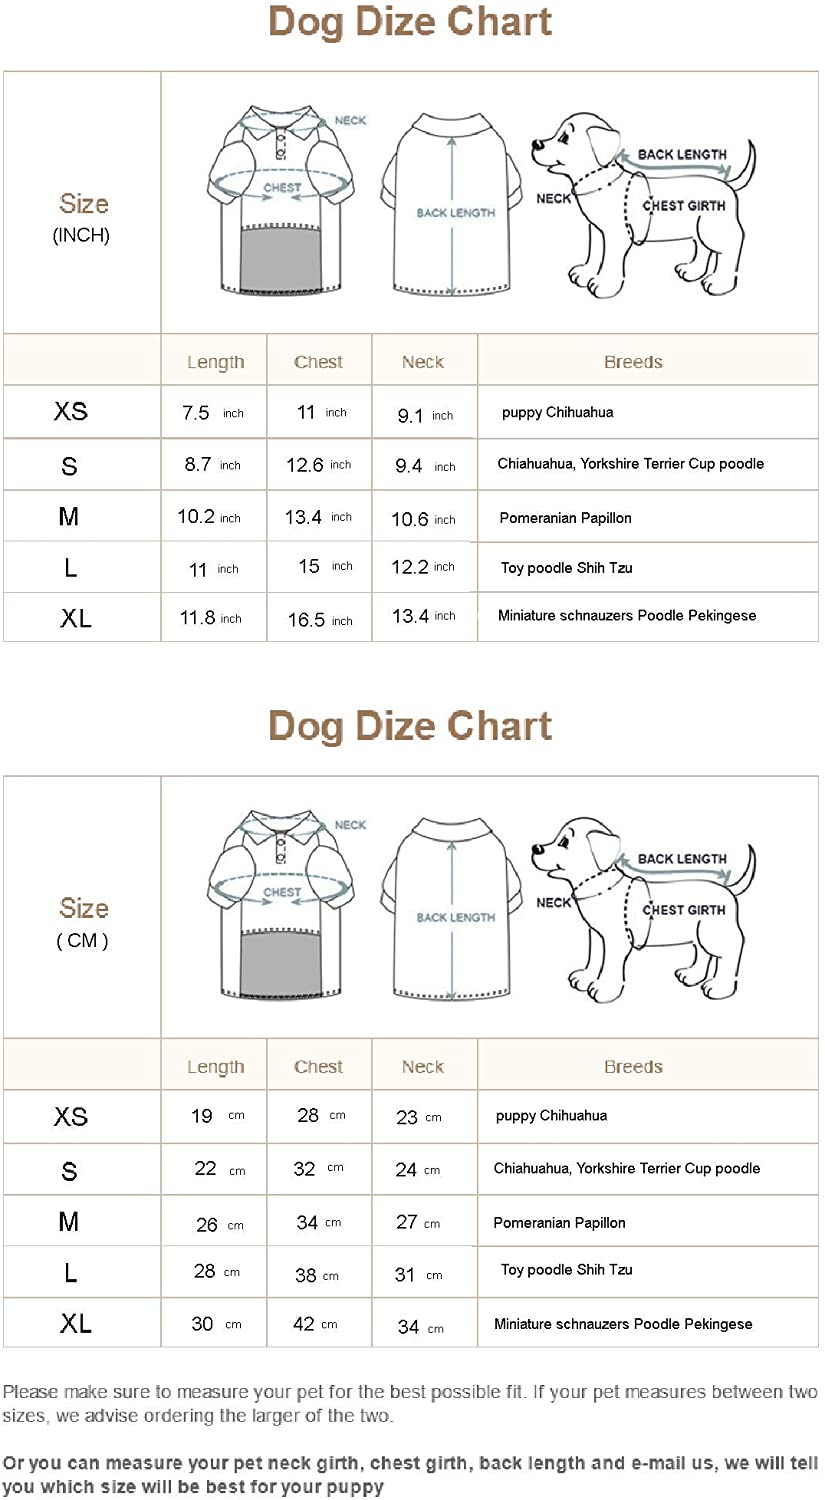  Longlongpet 2019 - Vestido de perro deportivo para perros en miniatura, tamaño pequeño, 100% algodón, 18 colores 